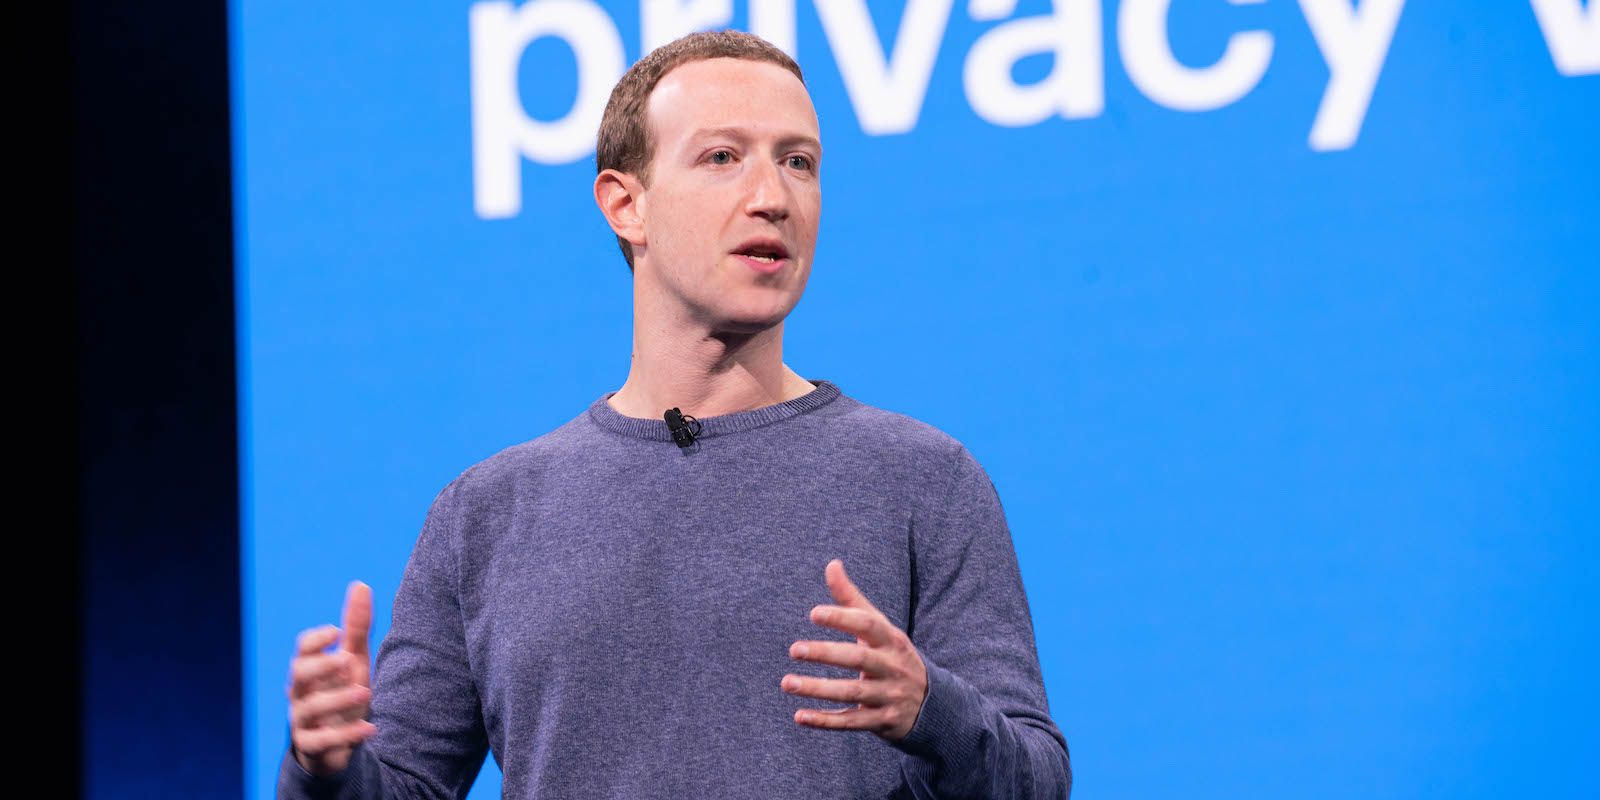 Mark Zuckerberg falando em um evento no Facebook